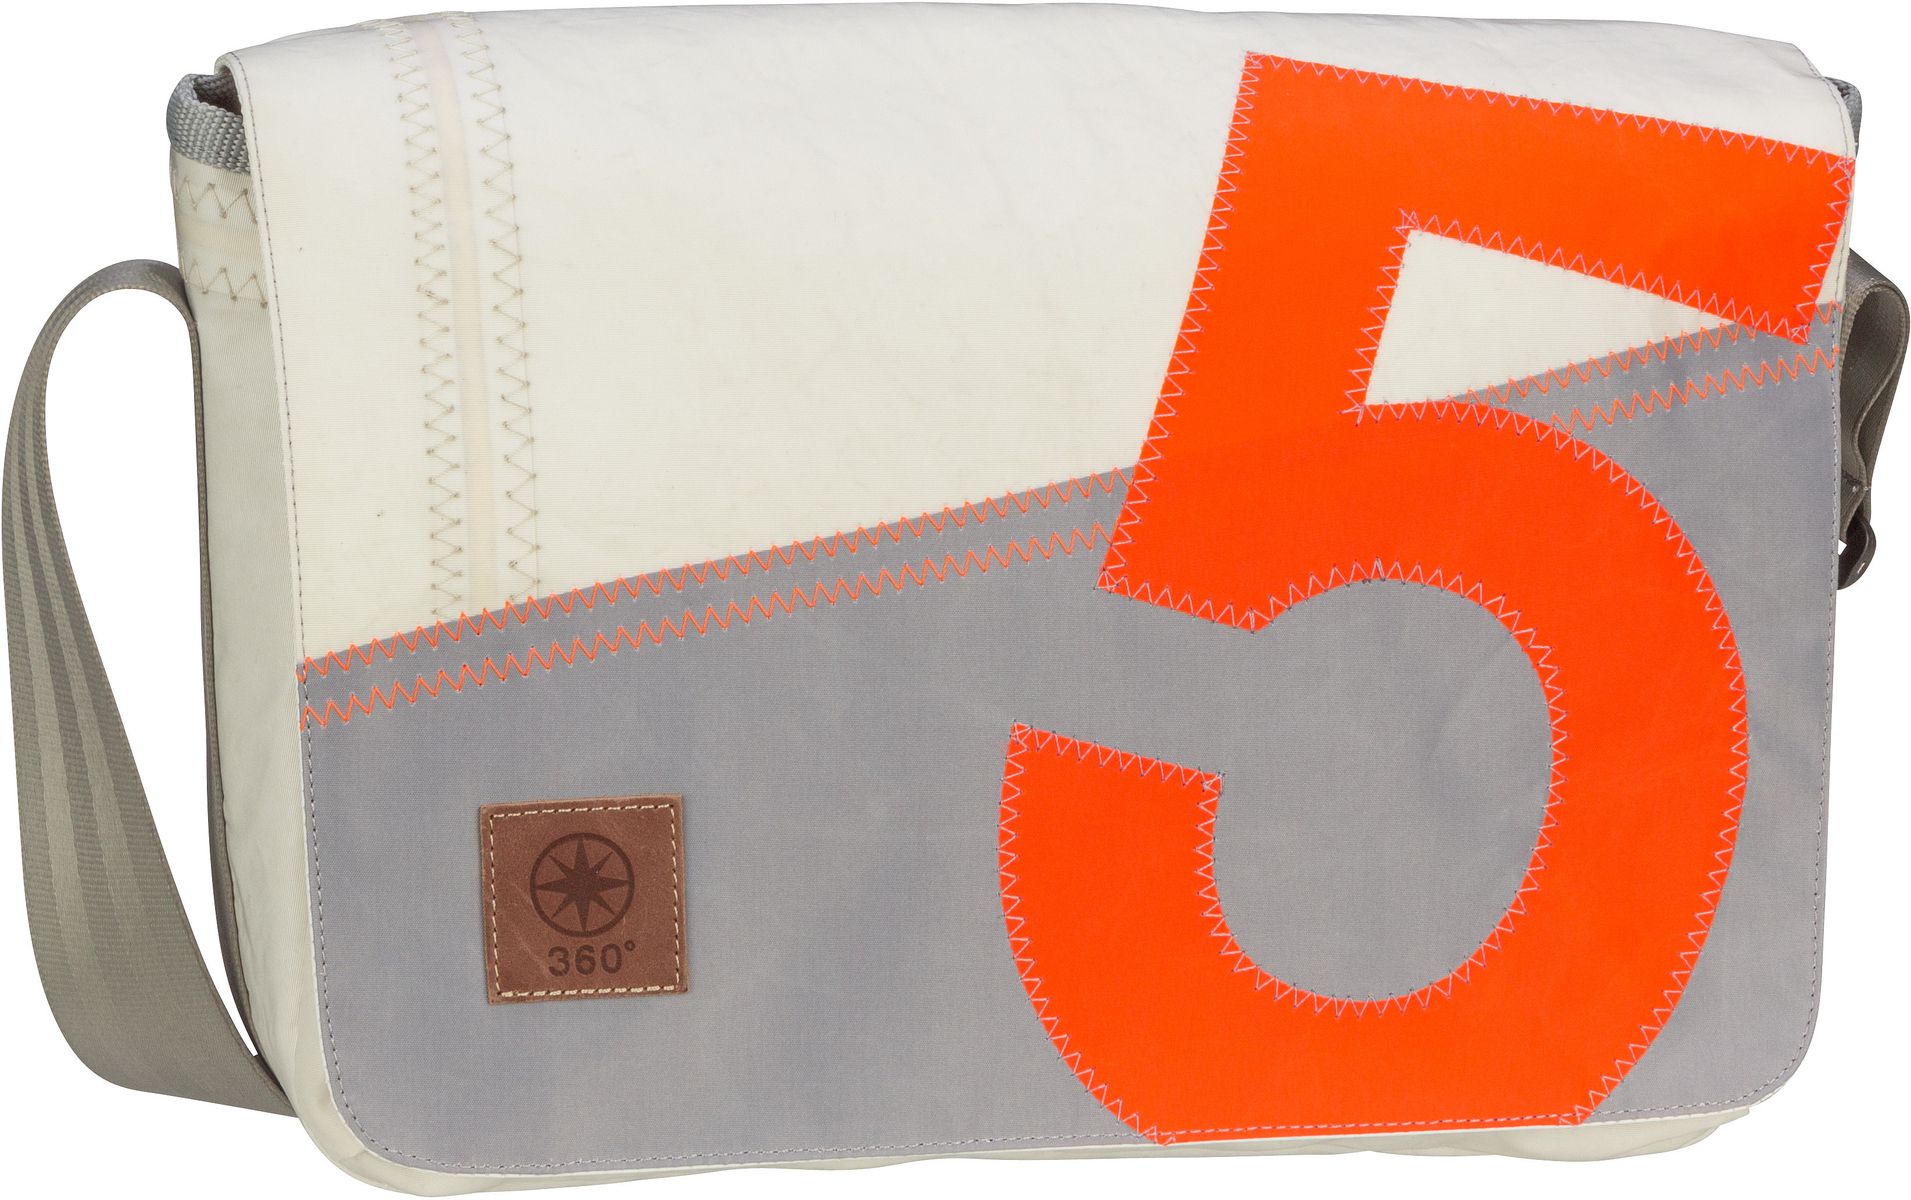 360Grad Barkasse Mini - Weiß/Grau mit oranger Zahl